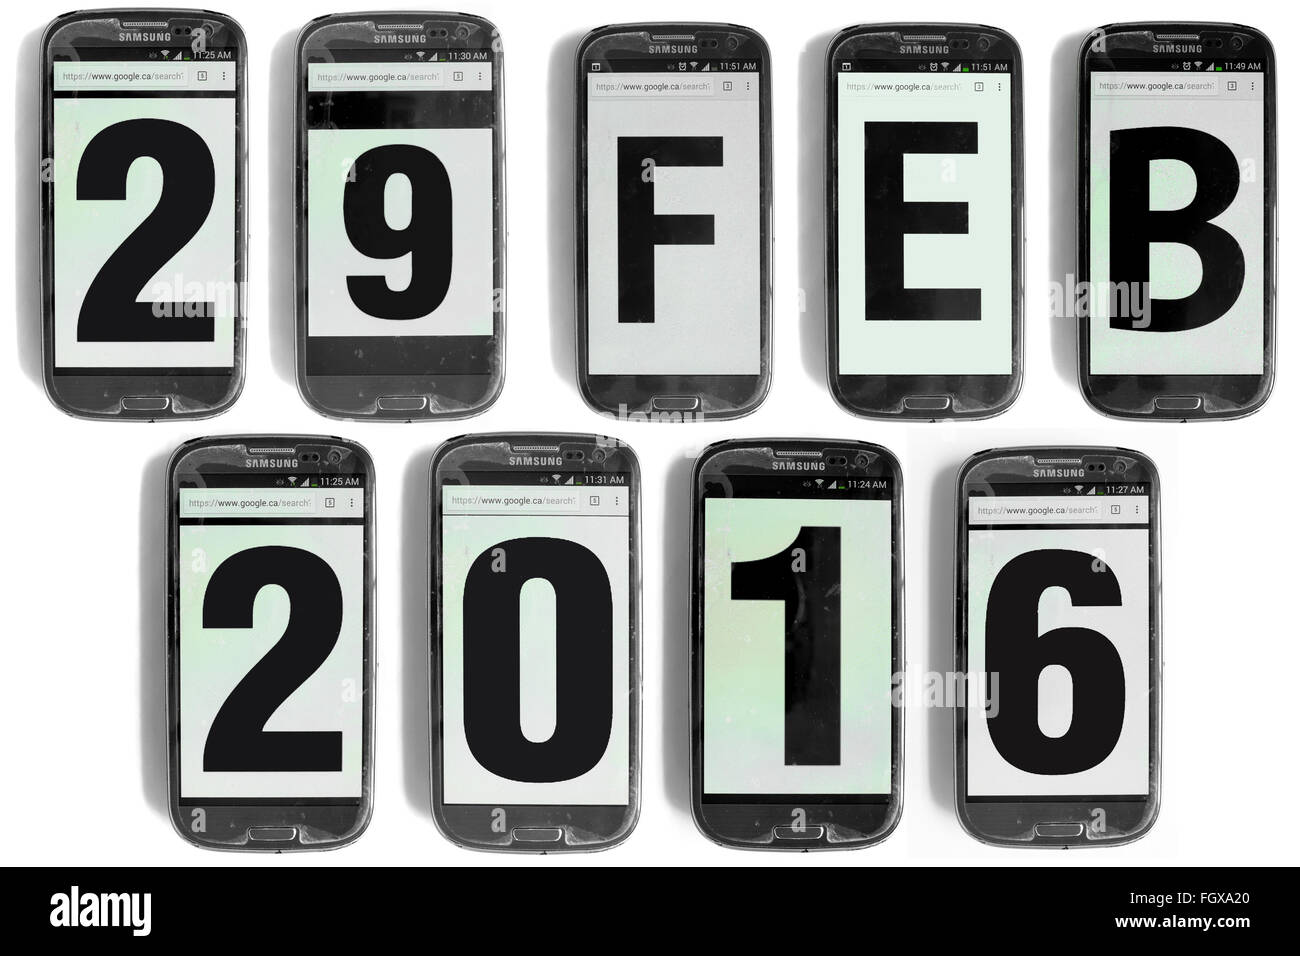 29 feb 2016 scritto su schermi di smartphone fotografati contro uno sfondo bianco. Foto Stock